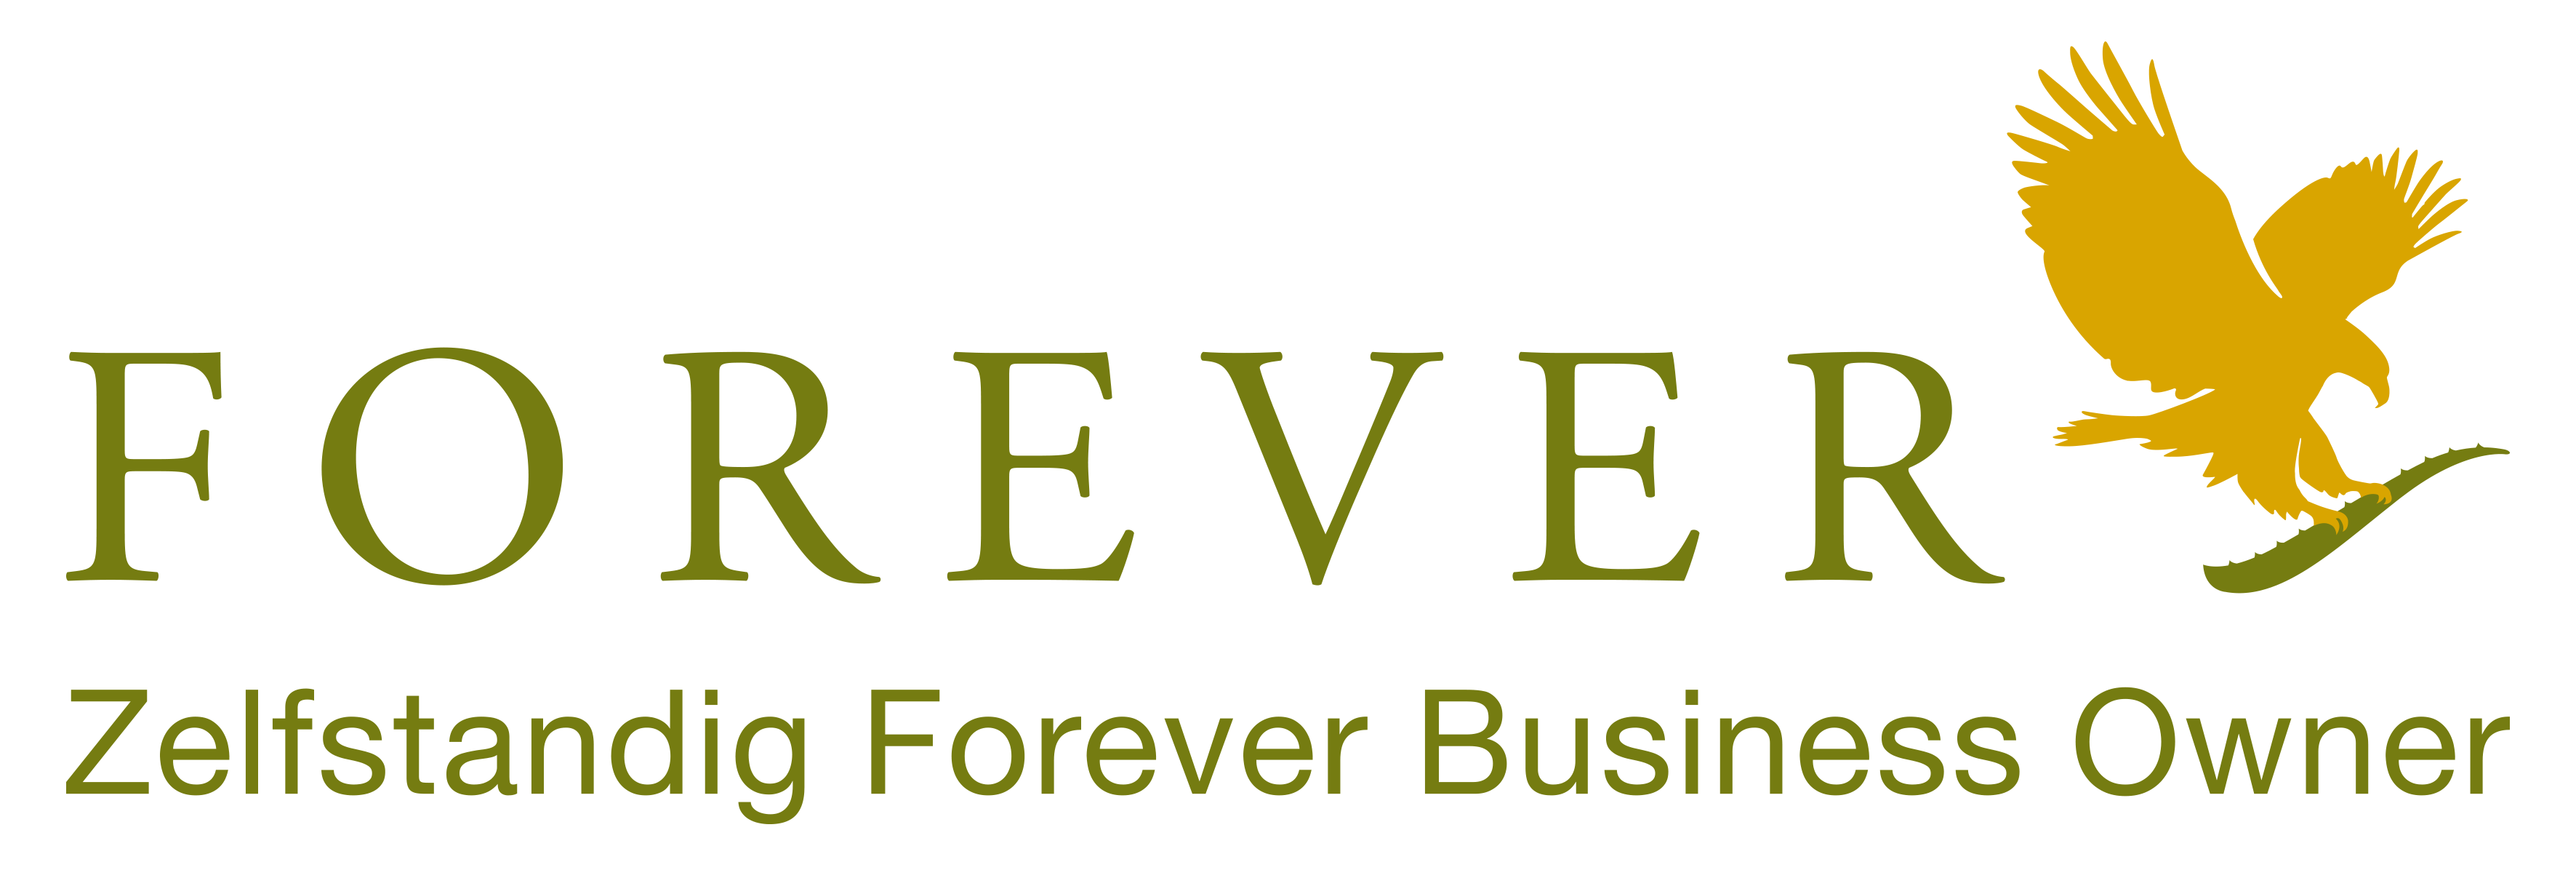 Forever LivingForever Aloe vera suministra productos Forever a clientes en Benelus y Francia como Empresario Independiente para . Forever Living Compre sus productos en Bélgica, Países Bajos, Luxemburgo y Francia